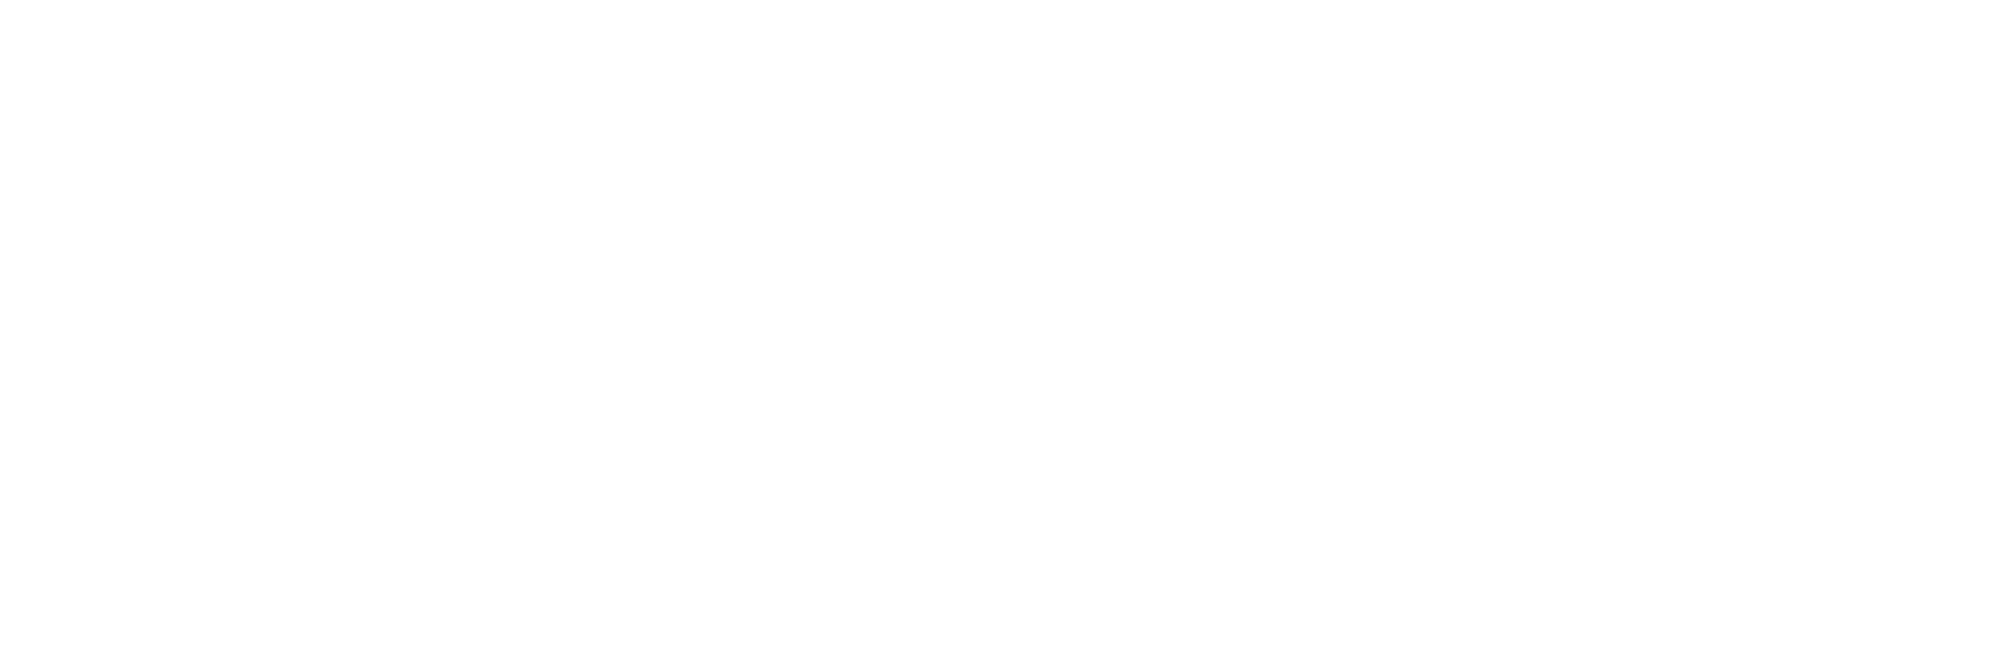 Material Health Strategies